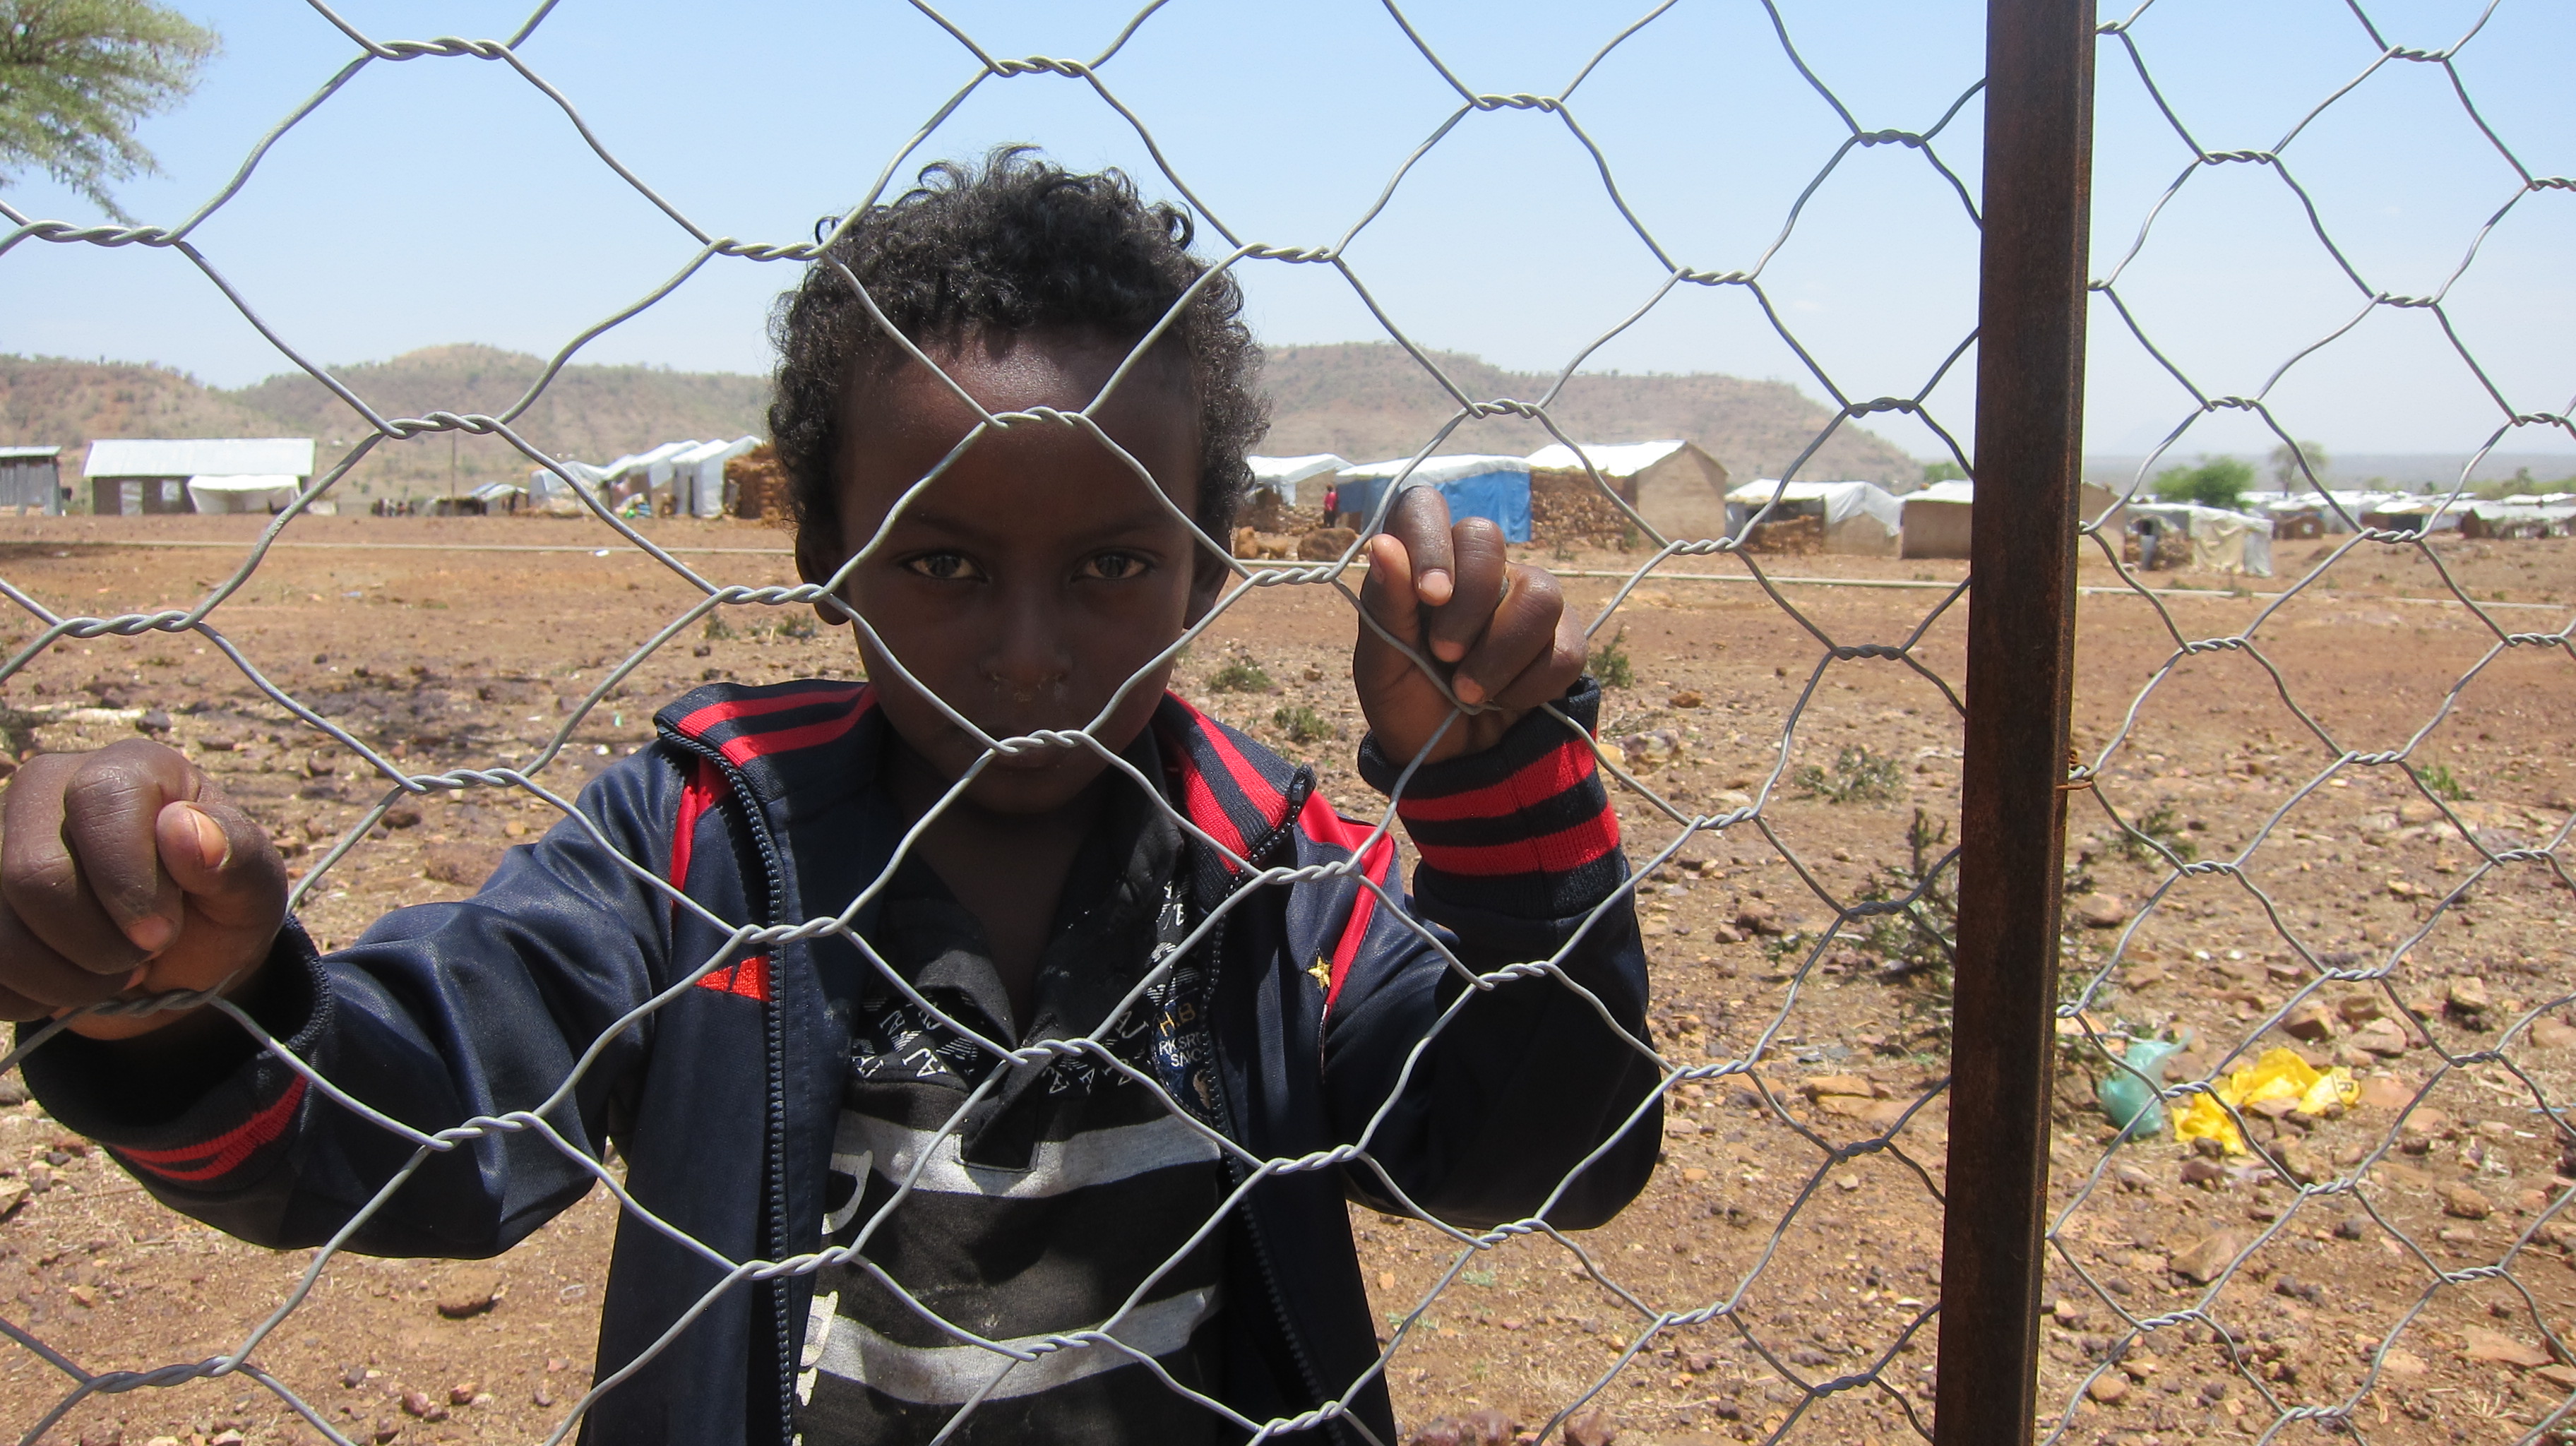 Nuova ondata di reclutamenti in Eritrea: Onu in allarme per le fughe di massa